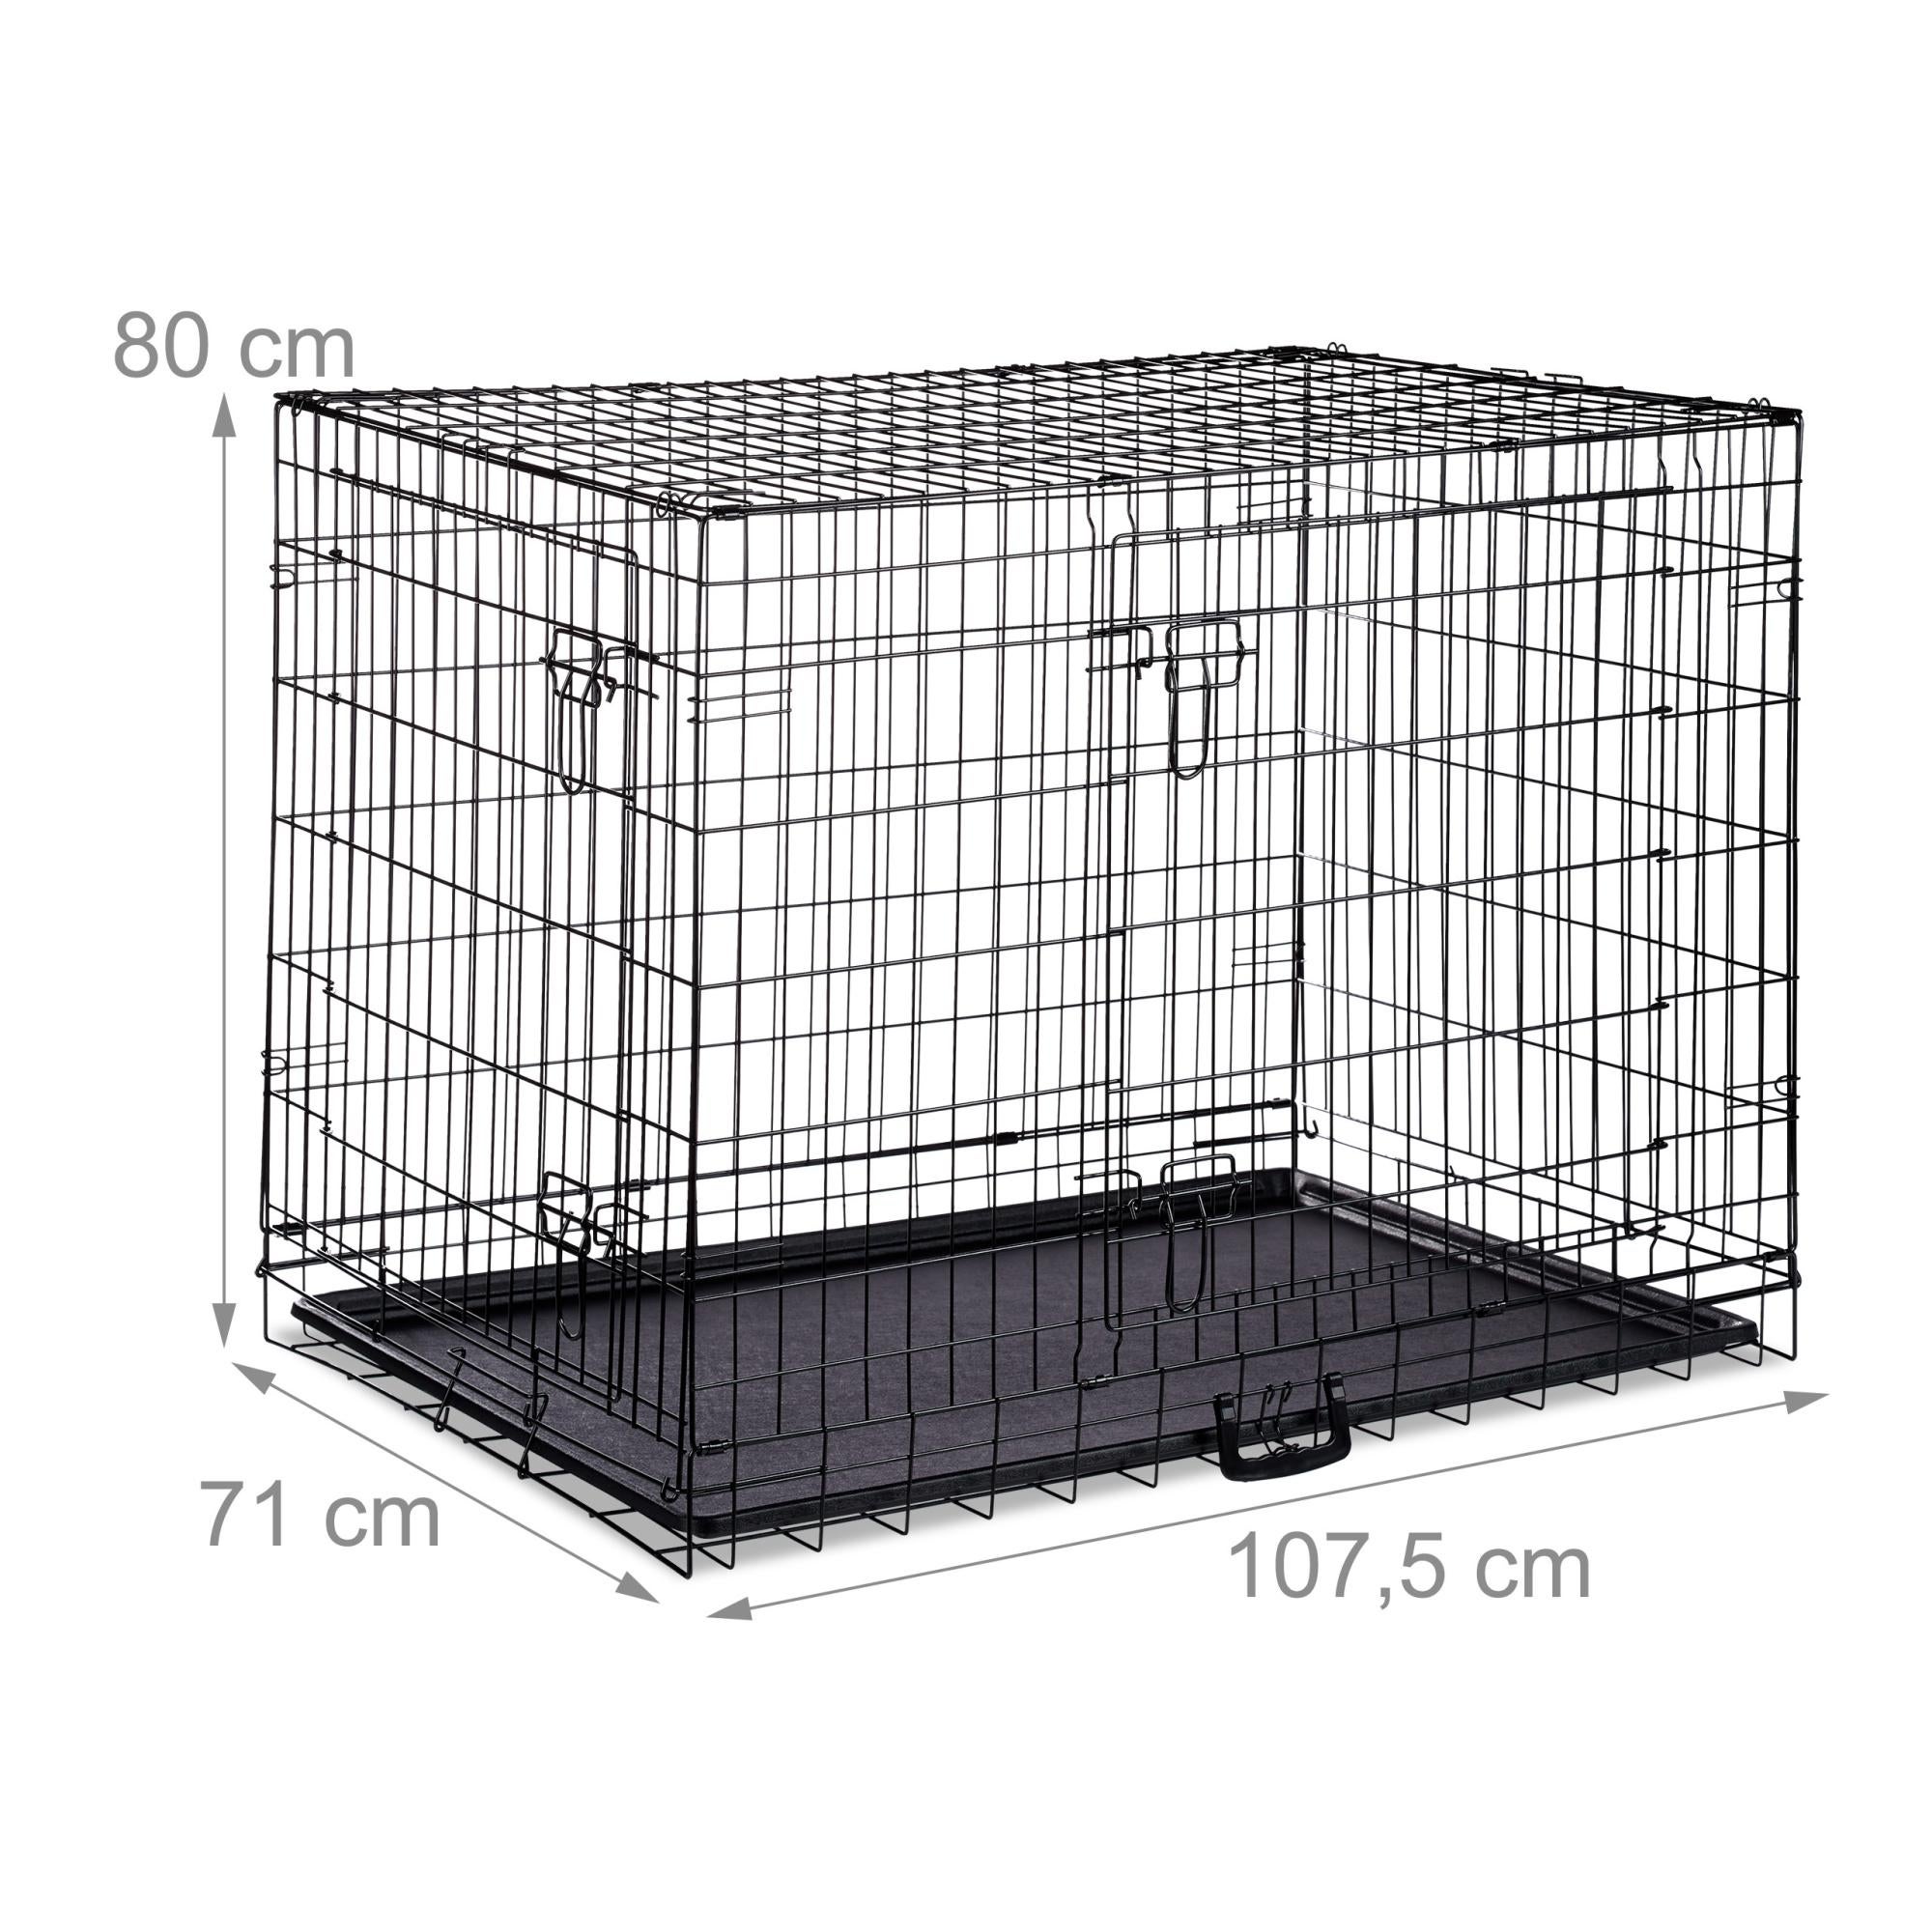 Relaxdays Cage pour Chien Pliante Boîte Transport Voiture Box pour Chiot 2 Portes Bac Fond Box Grillage Métal XL Noir 